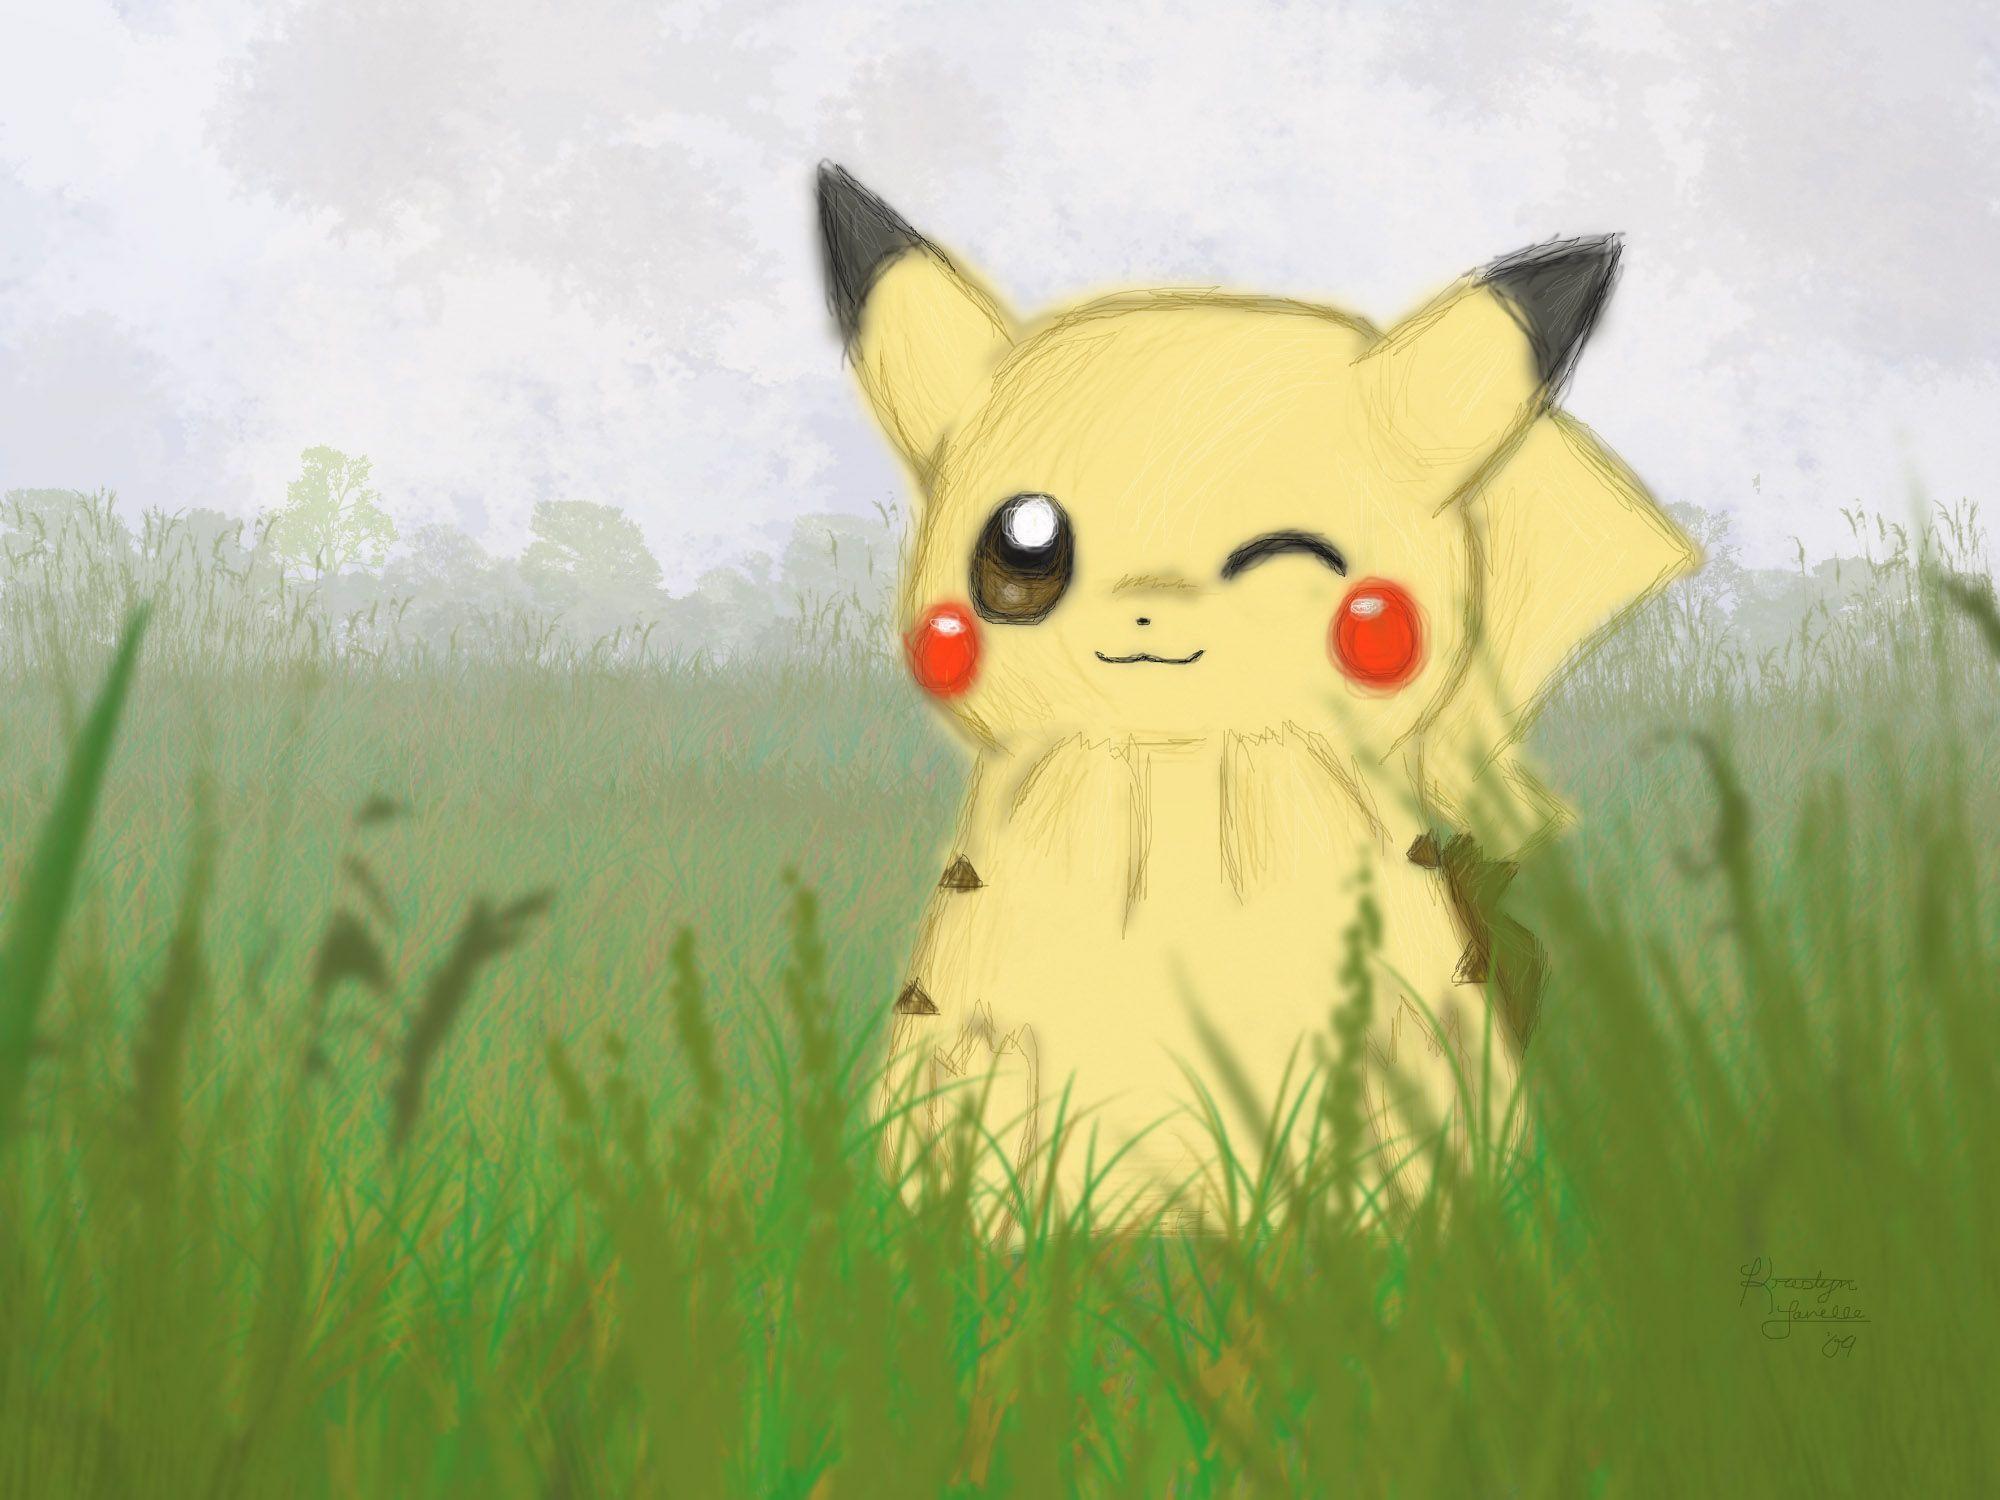 Pikachu cute